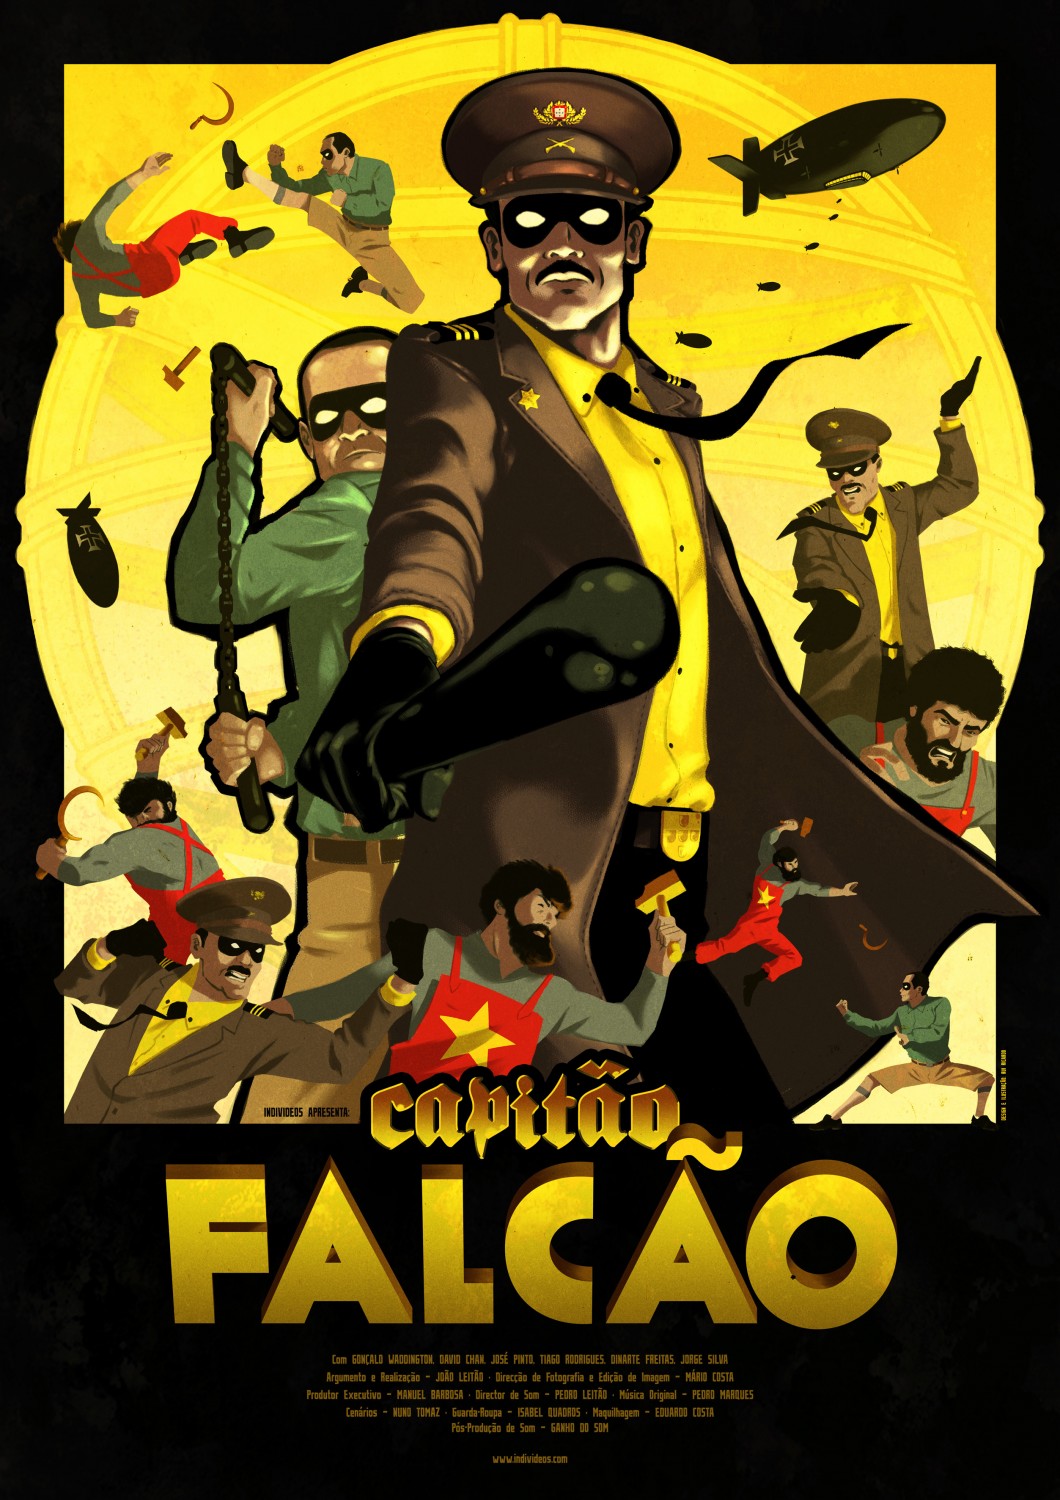 Extra Large TV Poster Image for Capitão Falcão (#2 of 2)